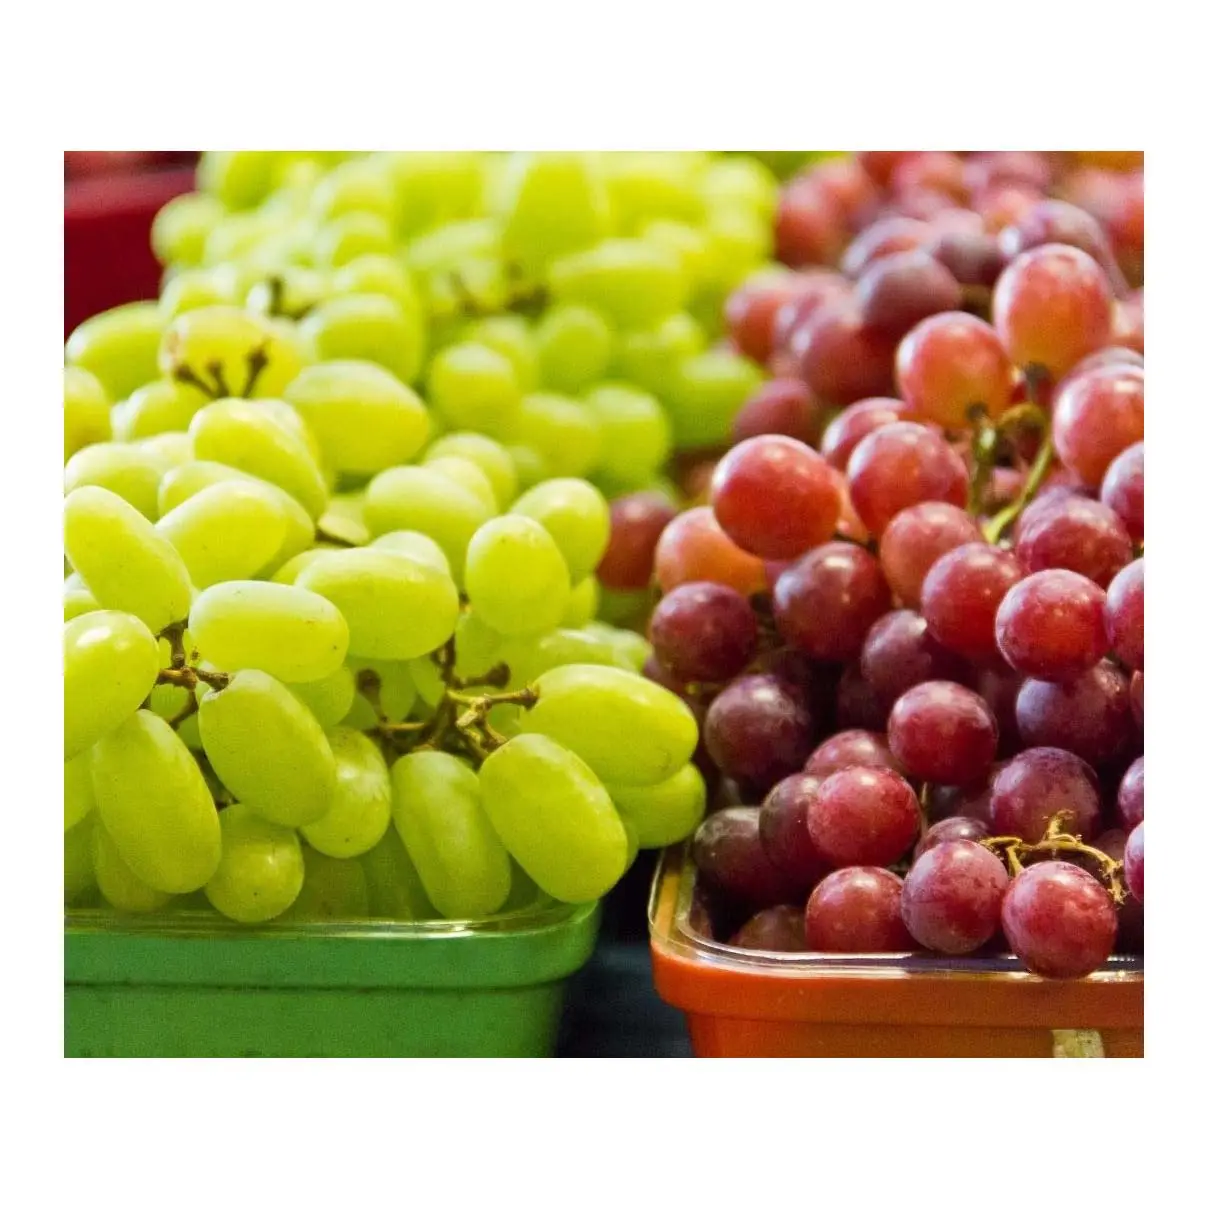 Ucuz fiyat doğal sağlıklı meyve üzüm ucuz fiyat ile yeni üzüm mahsul Premium kalite için hazır